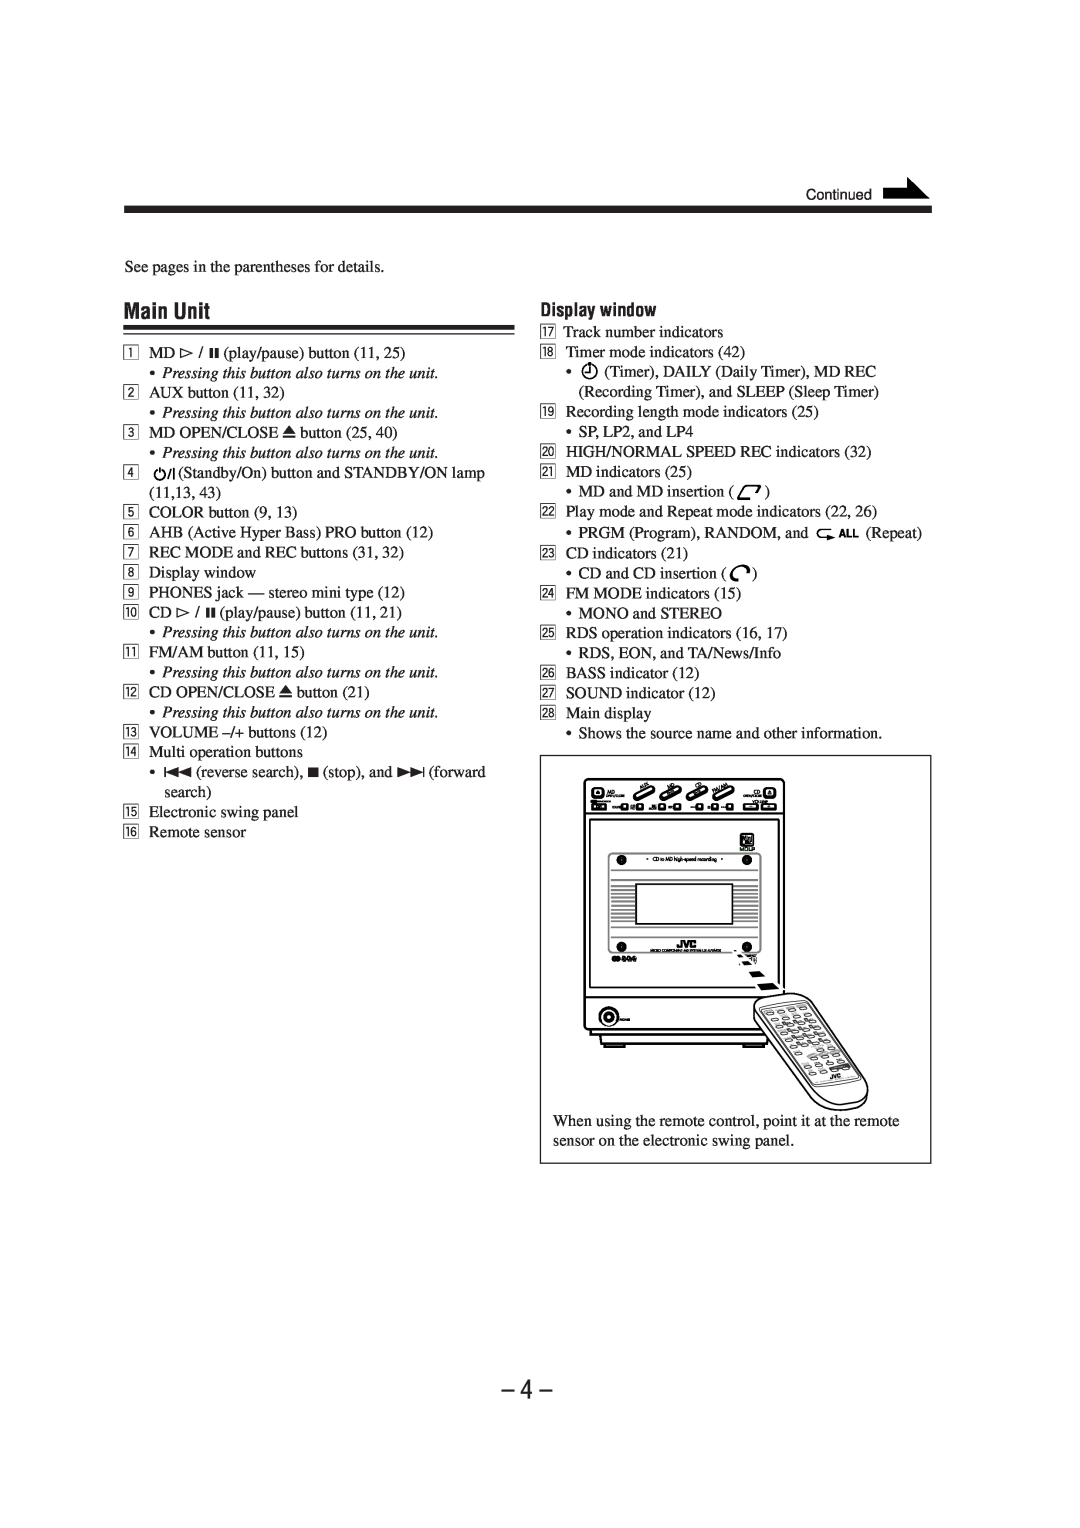 JVC UX-A70MDR manual Main Unit, Display window 